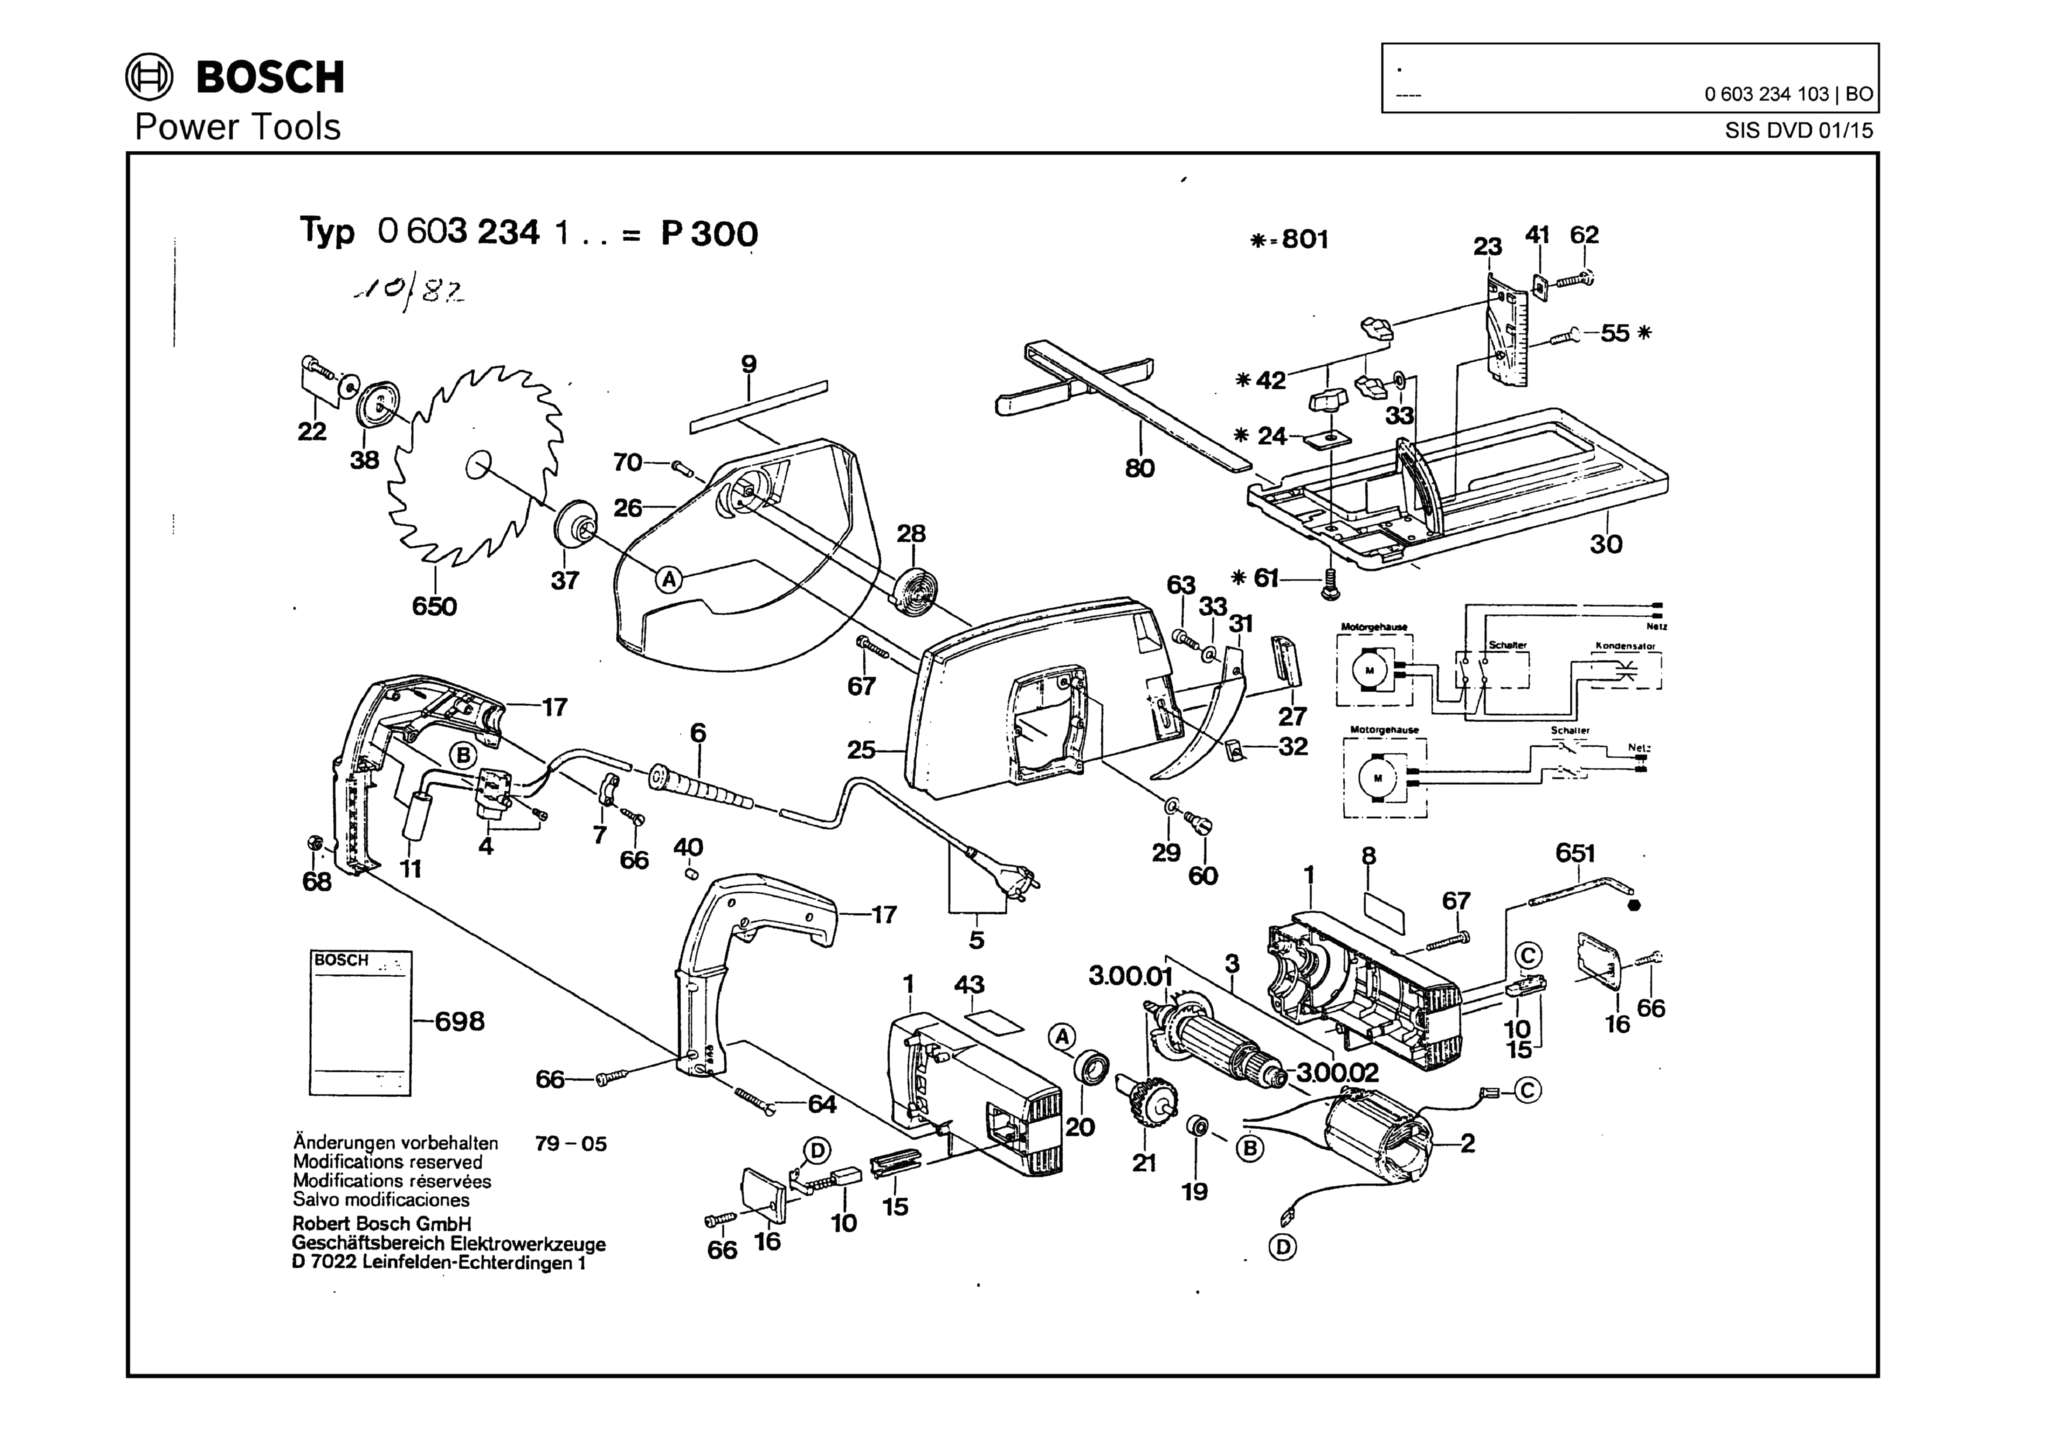 Запчасти, схема и деталировка Bosch P 300 (ТИП 0603234103)